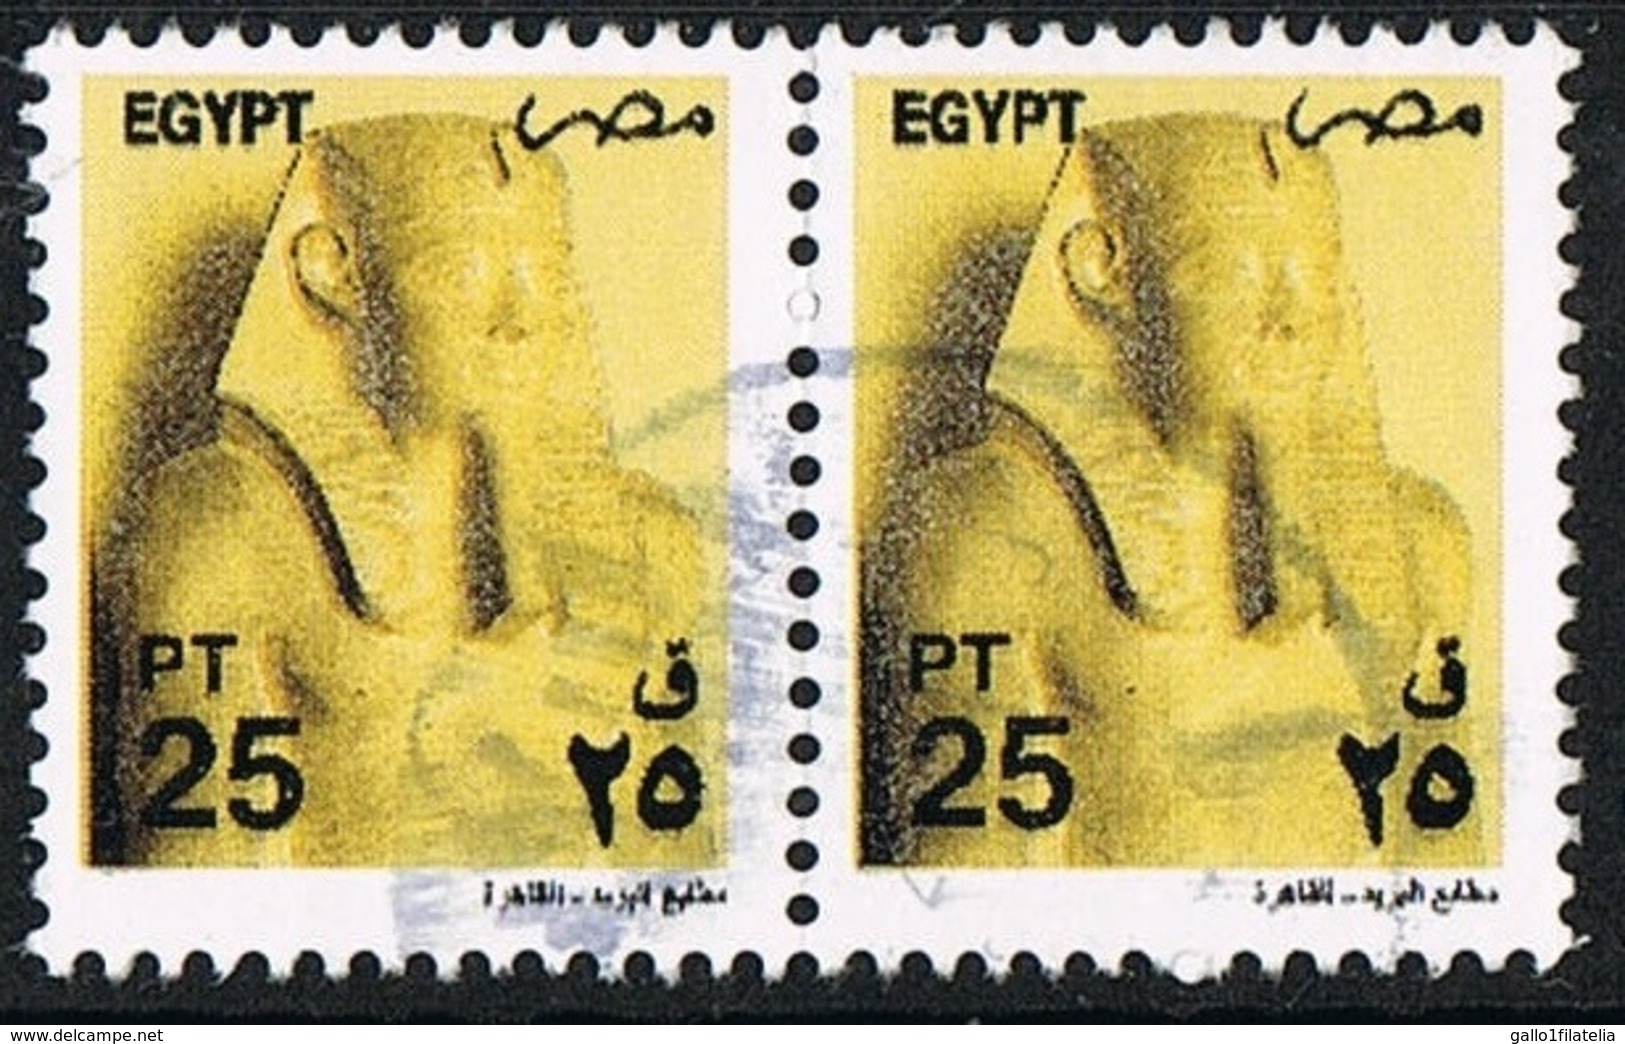 2000 - EGITTO / EGYPT - ARCHEOLOGIA - RE SEOSTRIS / KING SEOSTRIS - USATO/USED - Usati